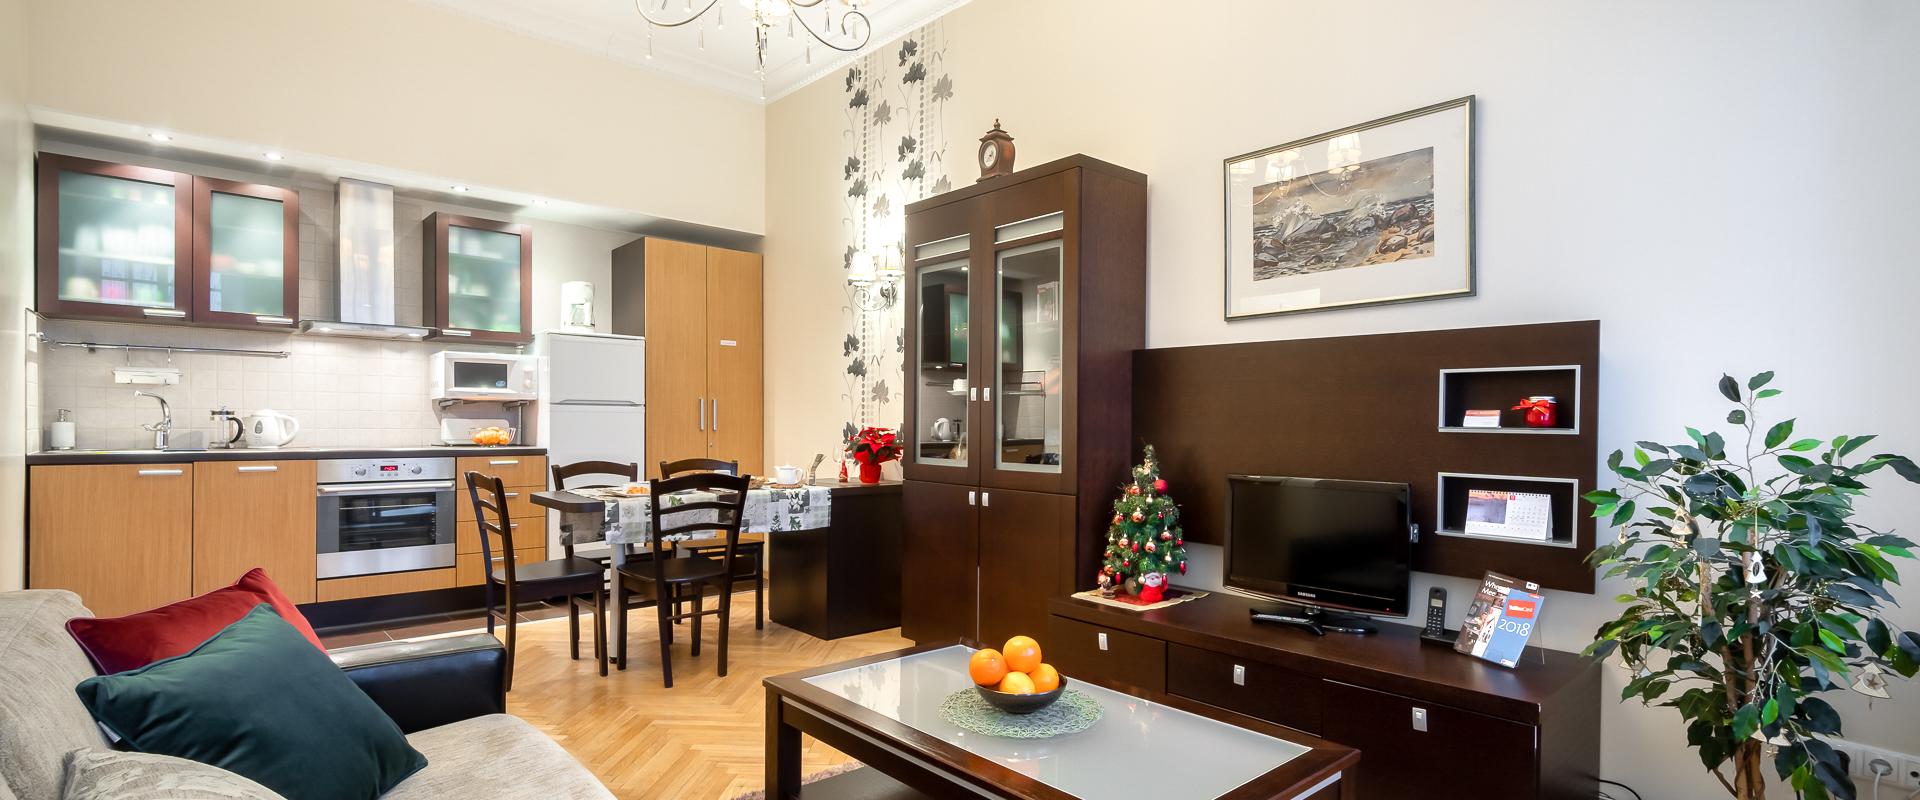 Comfort Gästewohnung in der Tallinner Altstadt